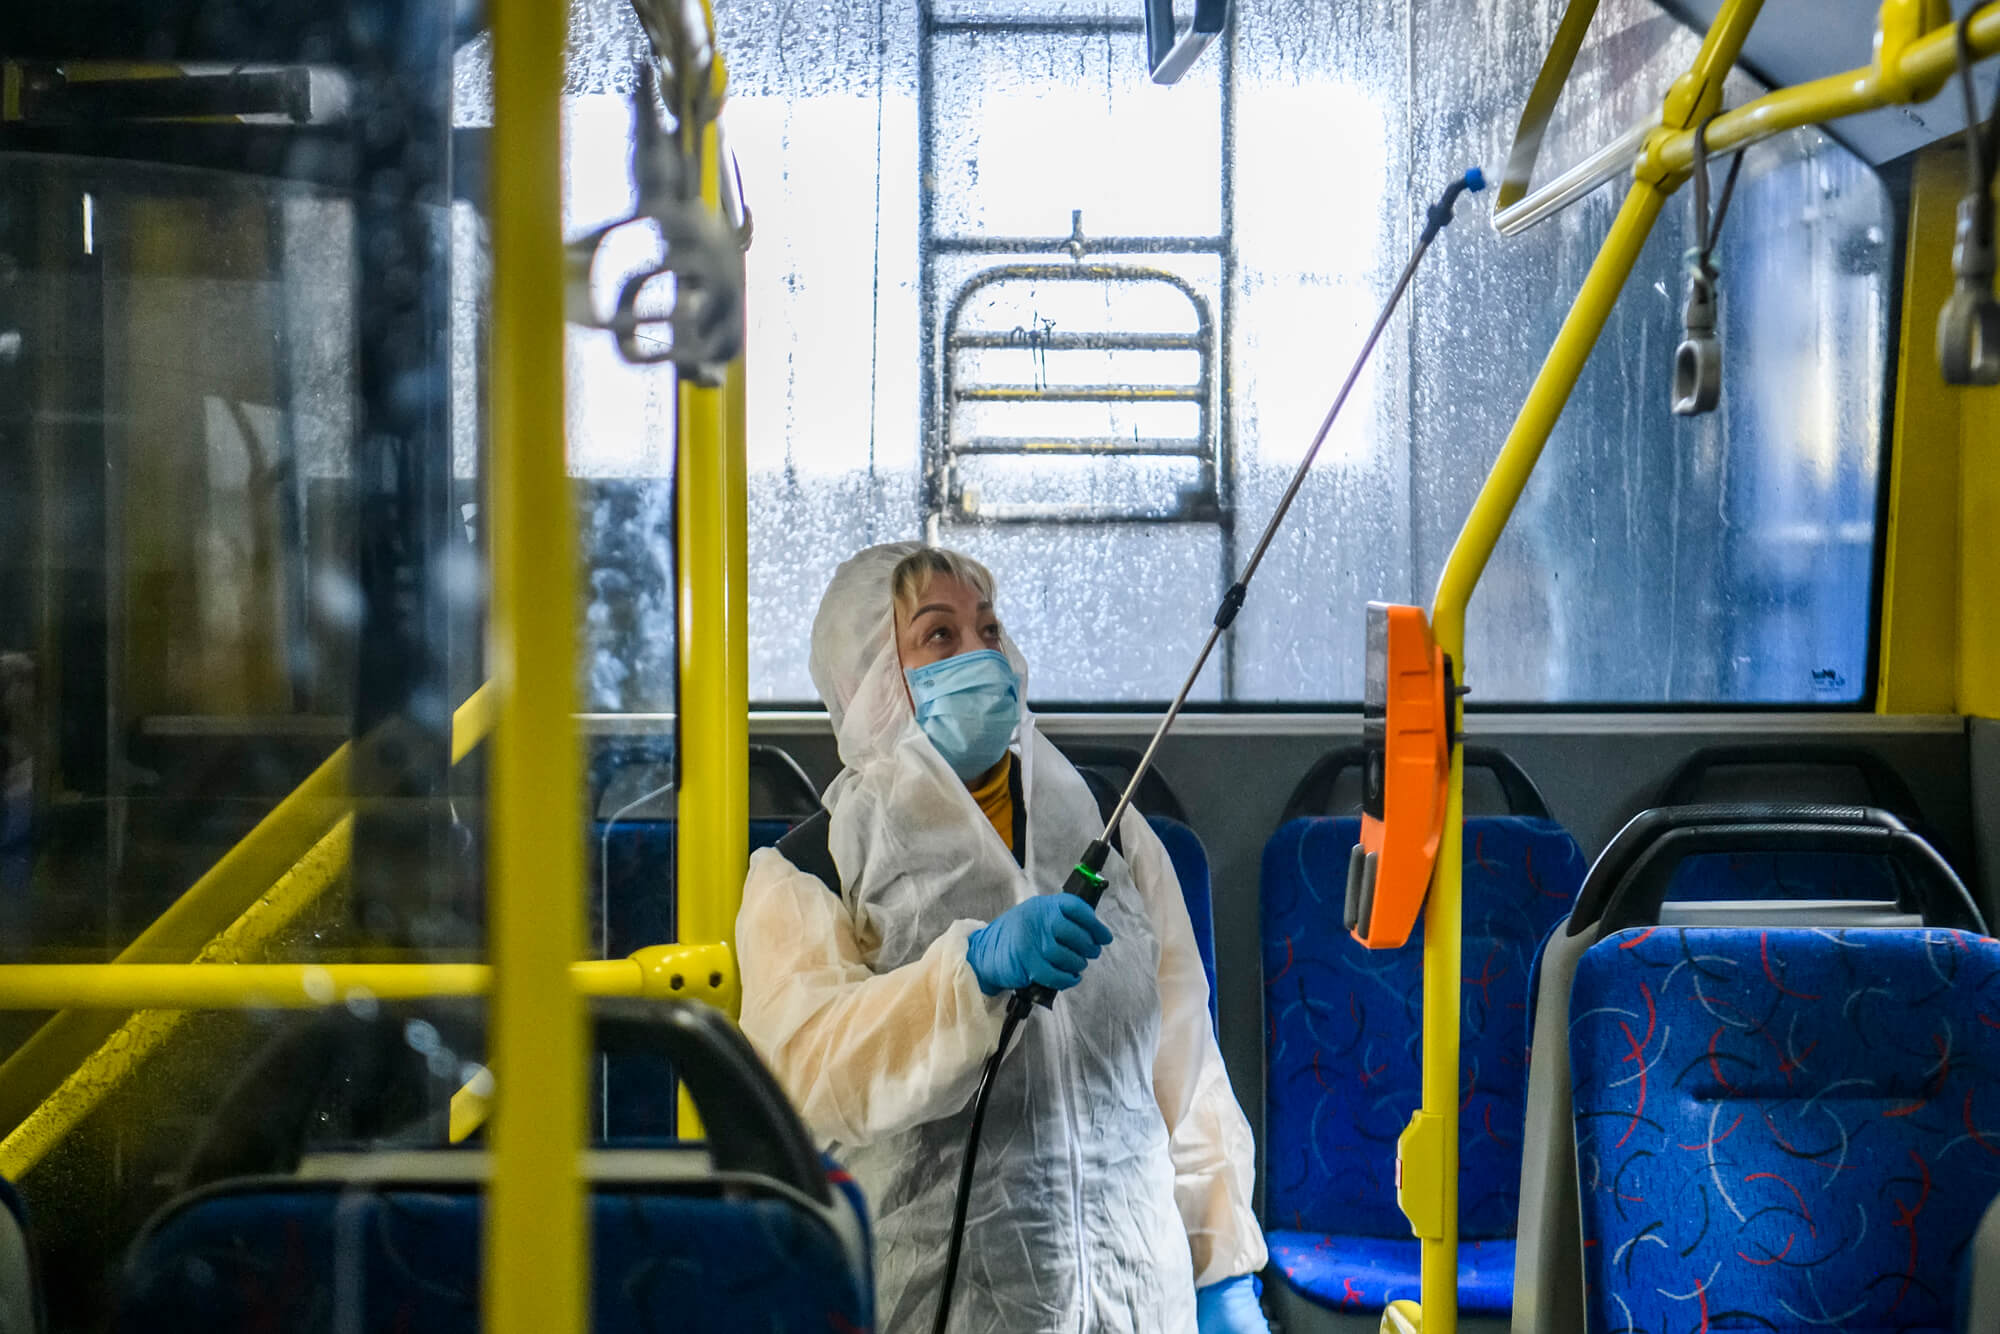 Адекватно ли Украина реагирует на эпидемию коронавируса. Анализ опыта других стран